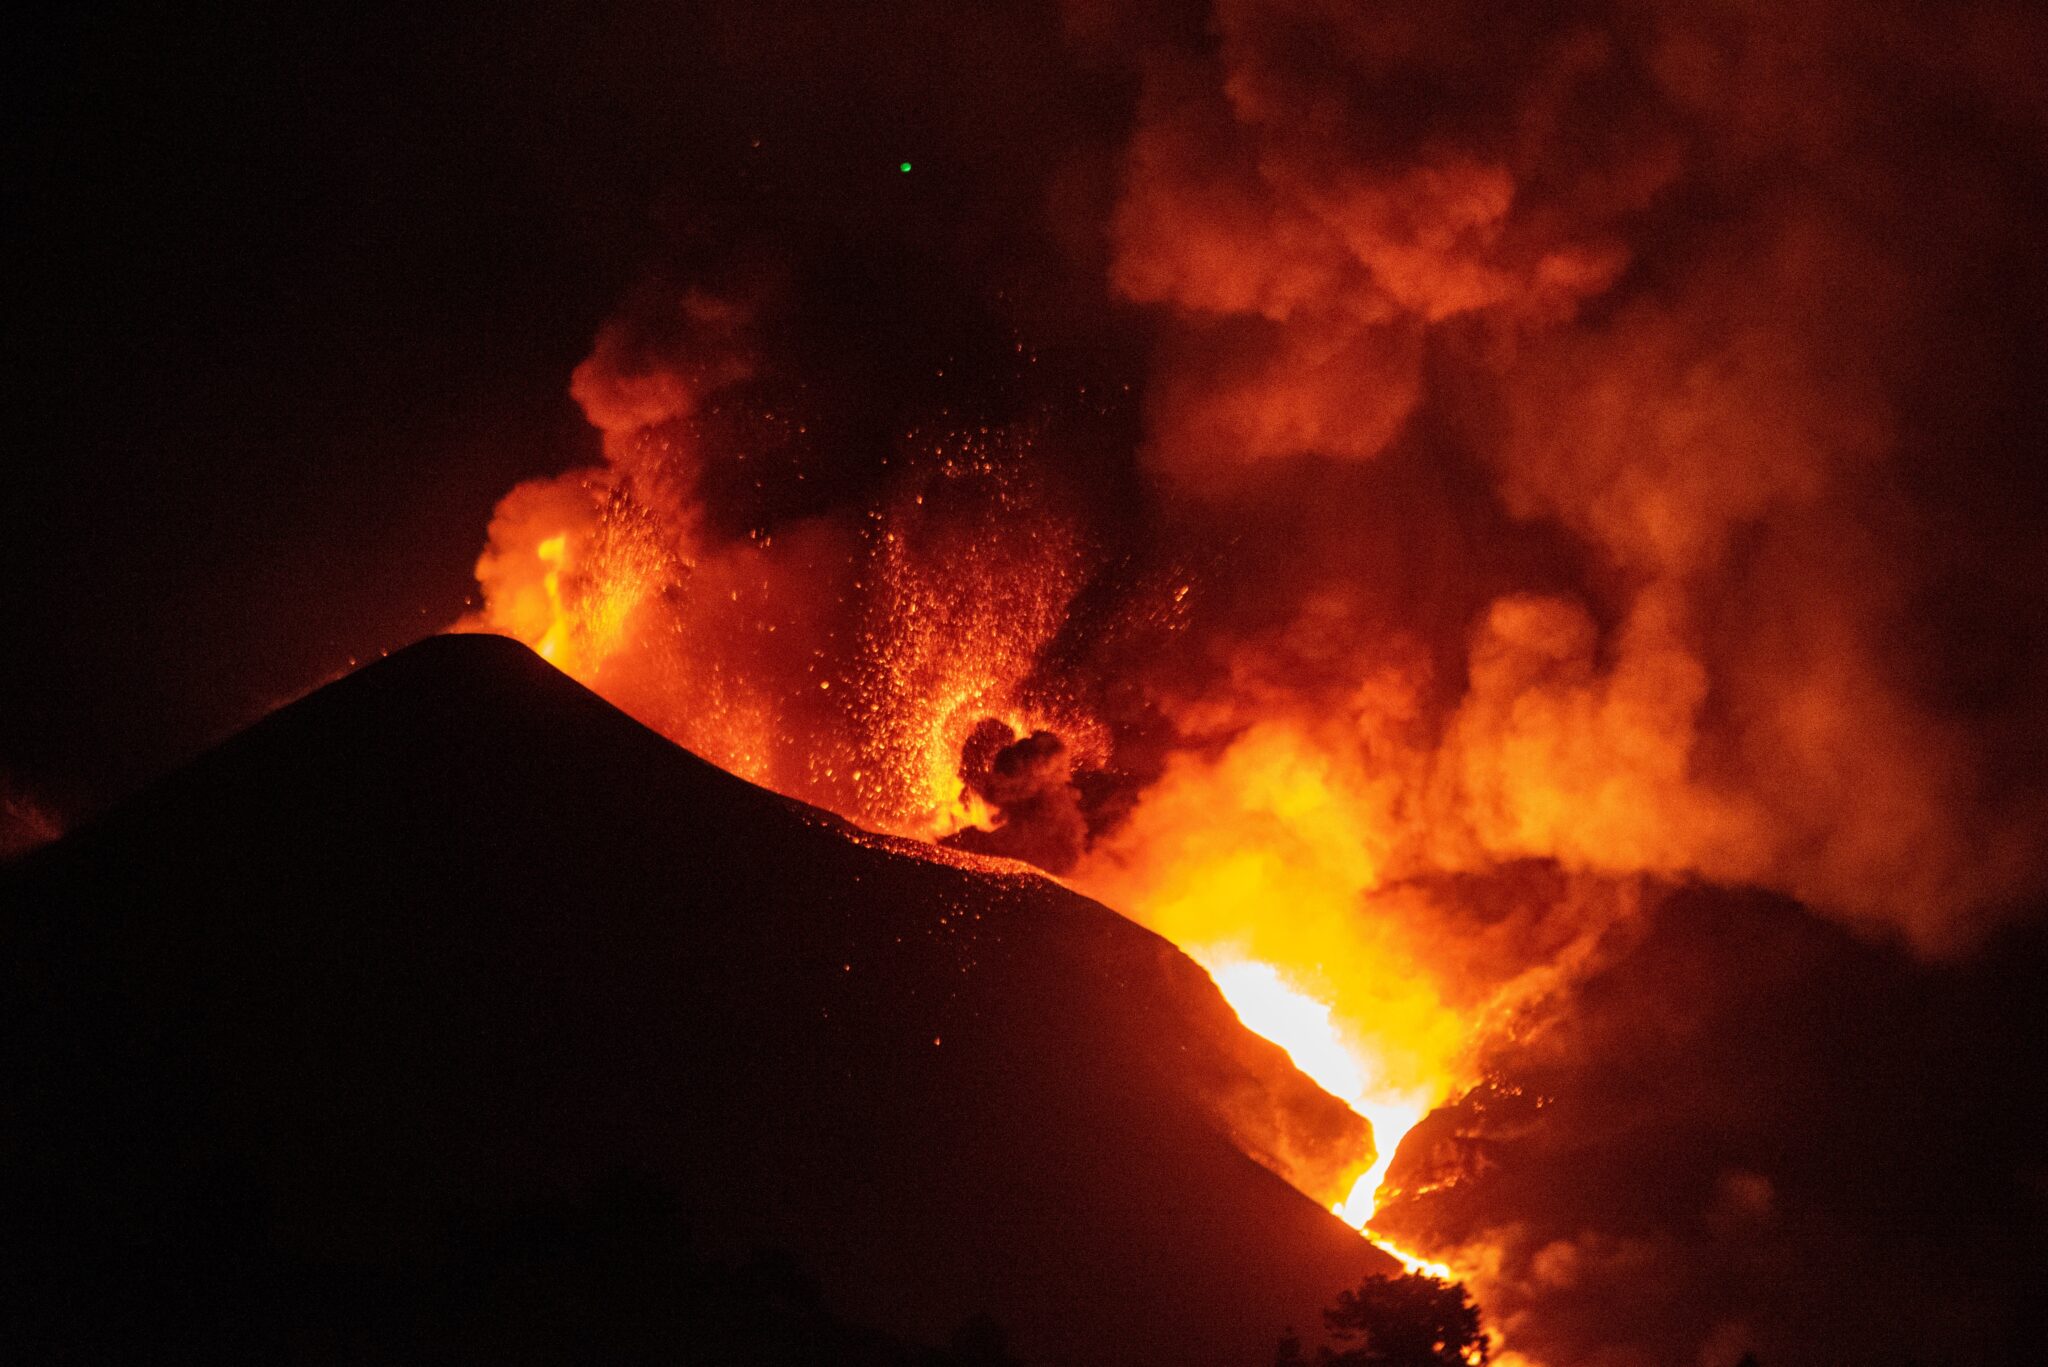 El volcán de La Palma continúa su actividad emitiendo lava que han formado nuevas coladas afectando a nuevas zonas a su paso